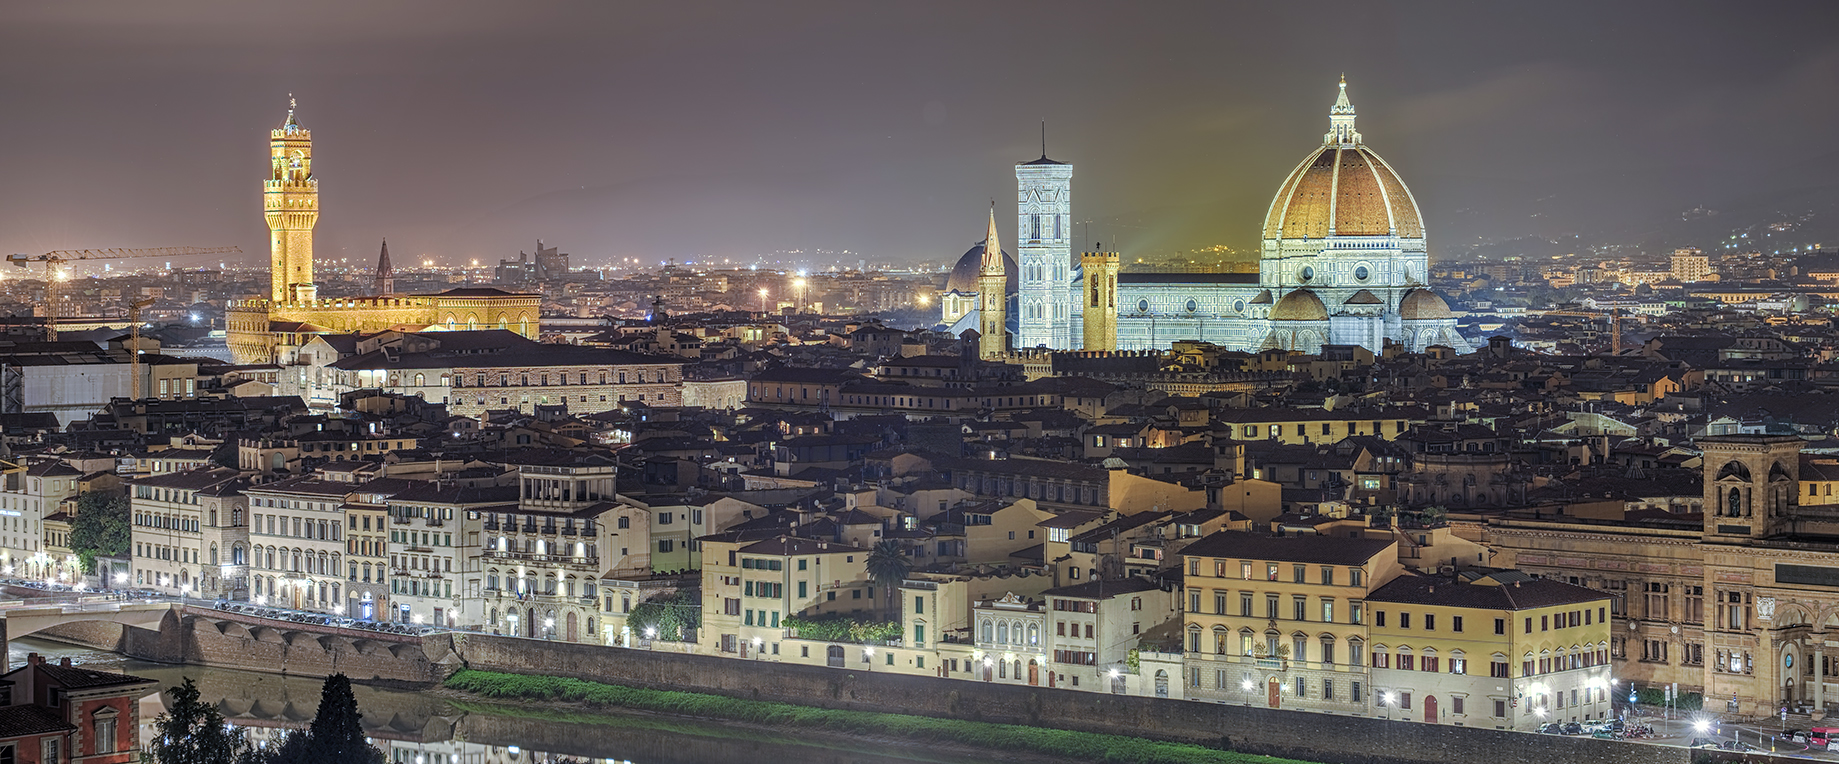 7309M-13M Florenz beleuchtet mit Dom und Palazzo Vecchio Panorama